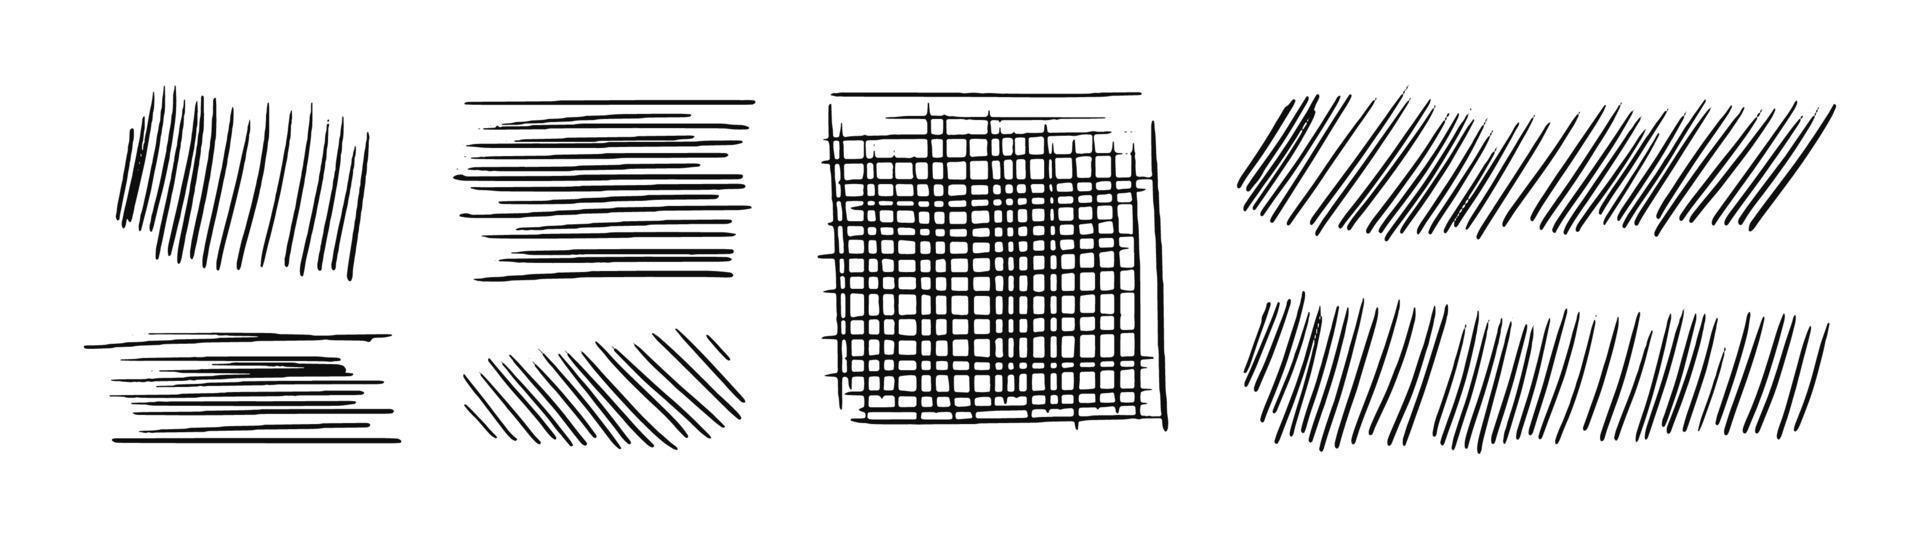 dibuja líneas de sombreado y un cuadrado. trazos diagonales, verticales o paralelos. un conjunto de garabatos tachados dibujados a mano. ilustración de stock vectorial aislada en blanco. vector